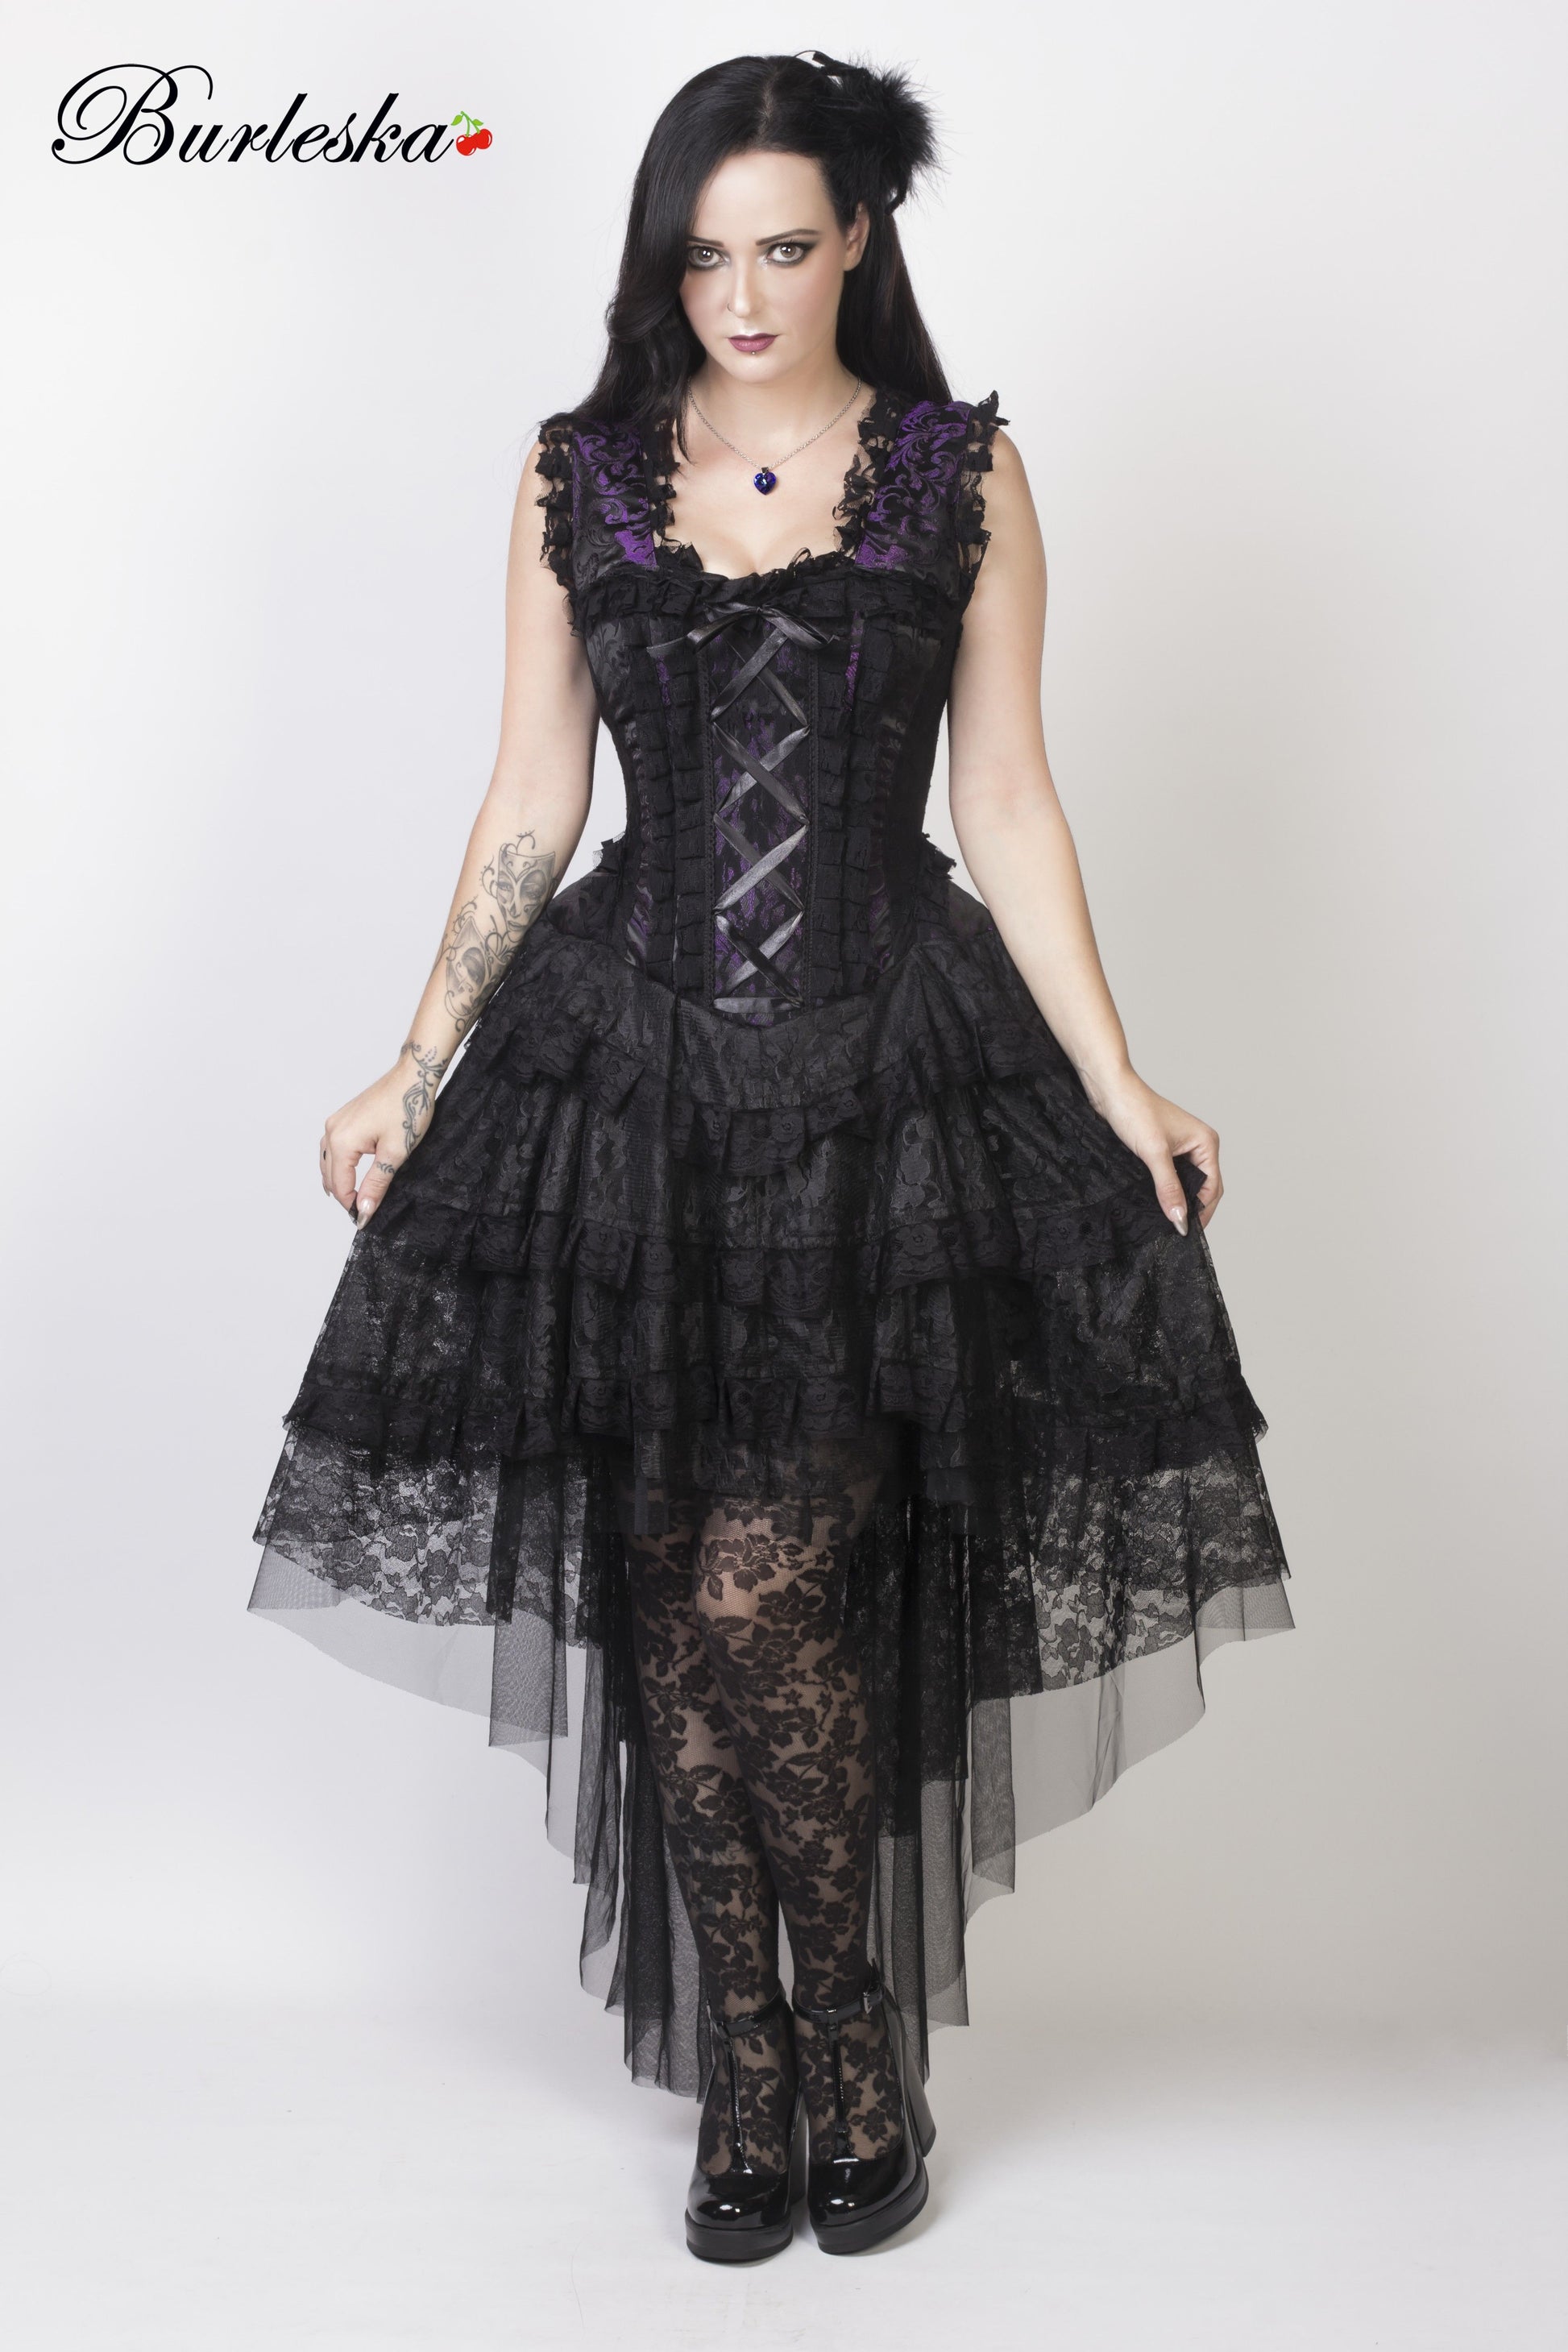 Corset Dress, Victorian, Gothic, Western